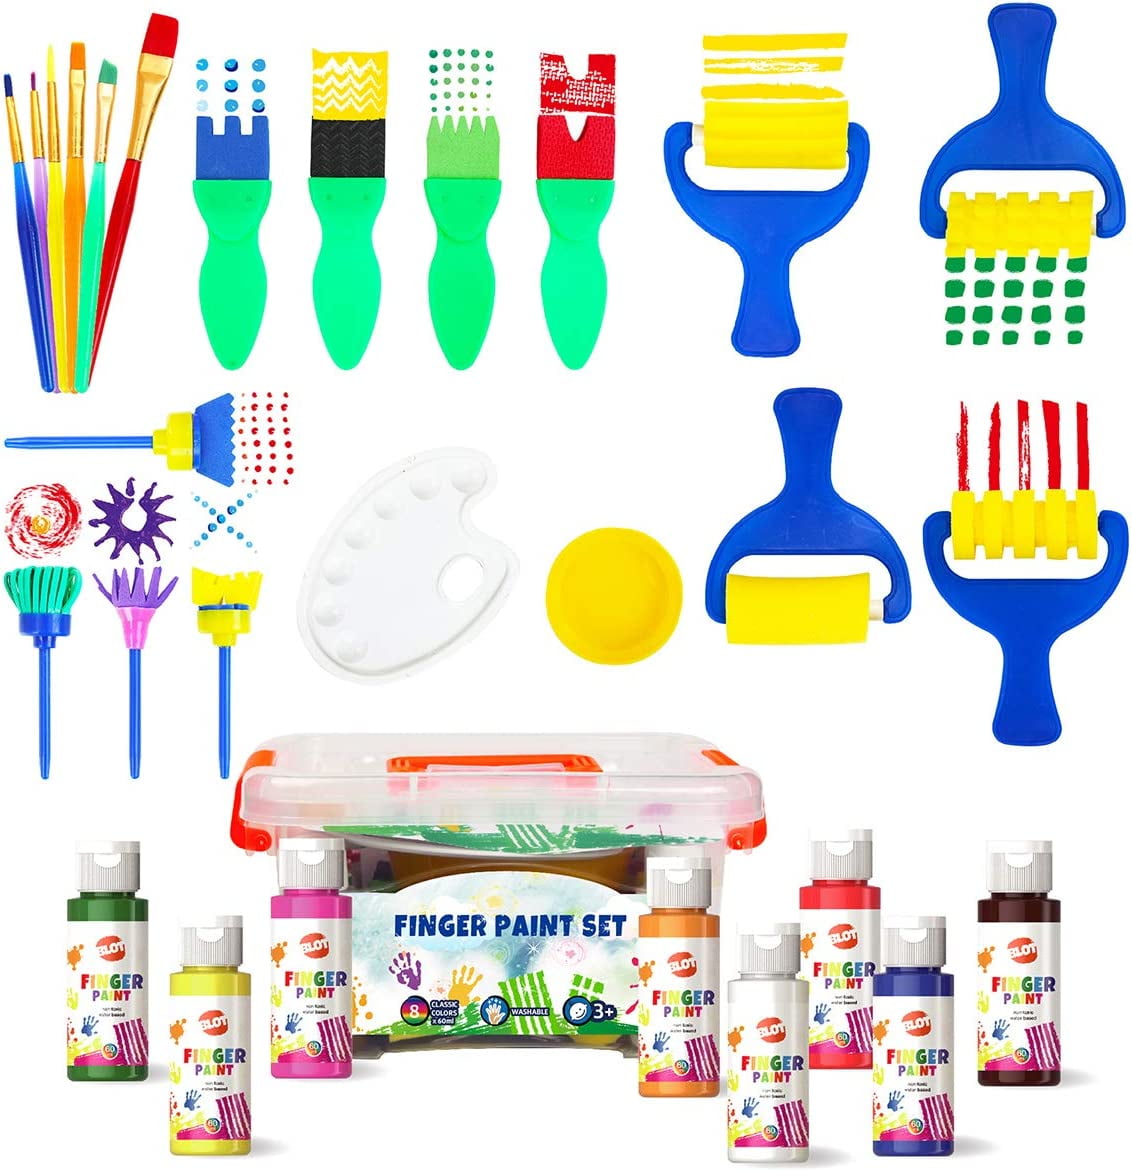 AROIC Washable Finger Paint set, 82 Pack Washable Kids Paint Set with 12  Color Finger Paints, Sponges, Paint Brushes, Waterproof Paint Apron,  Palette